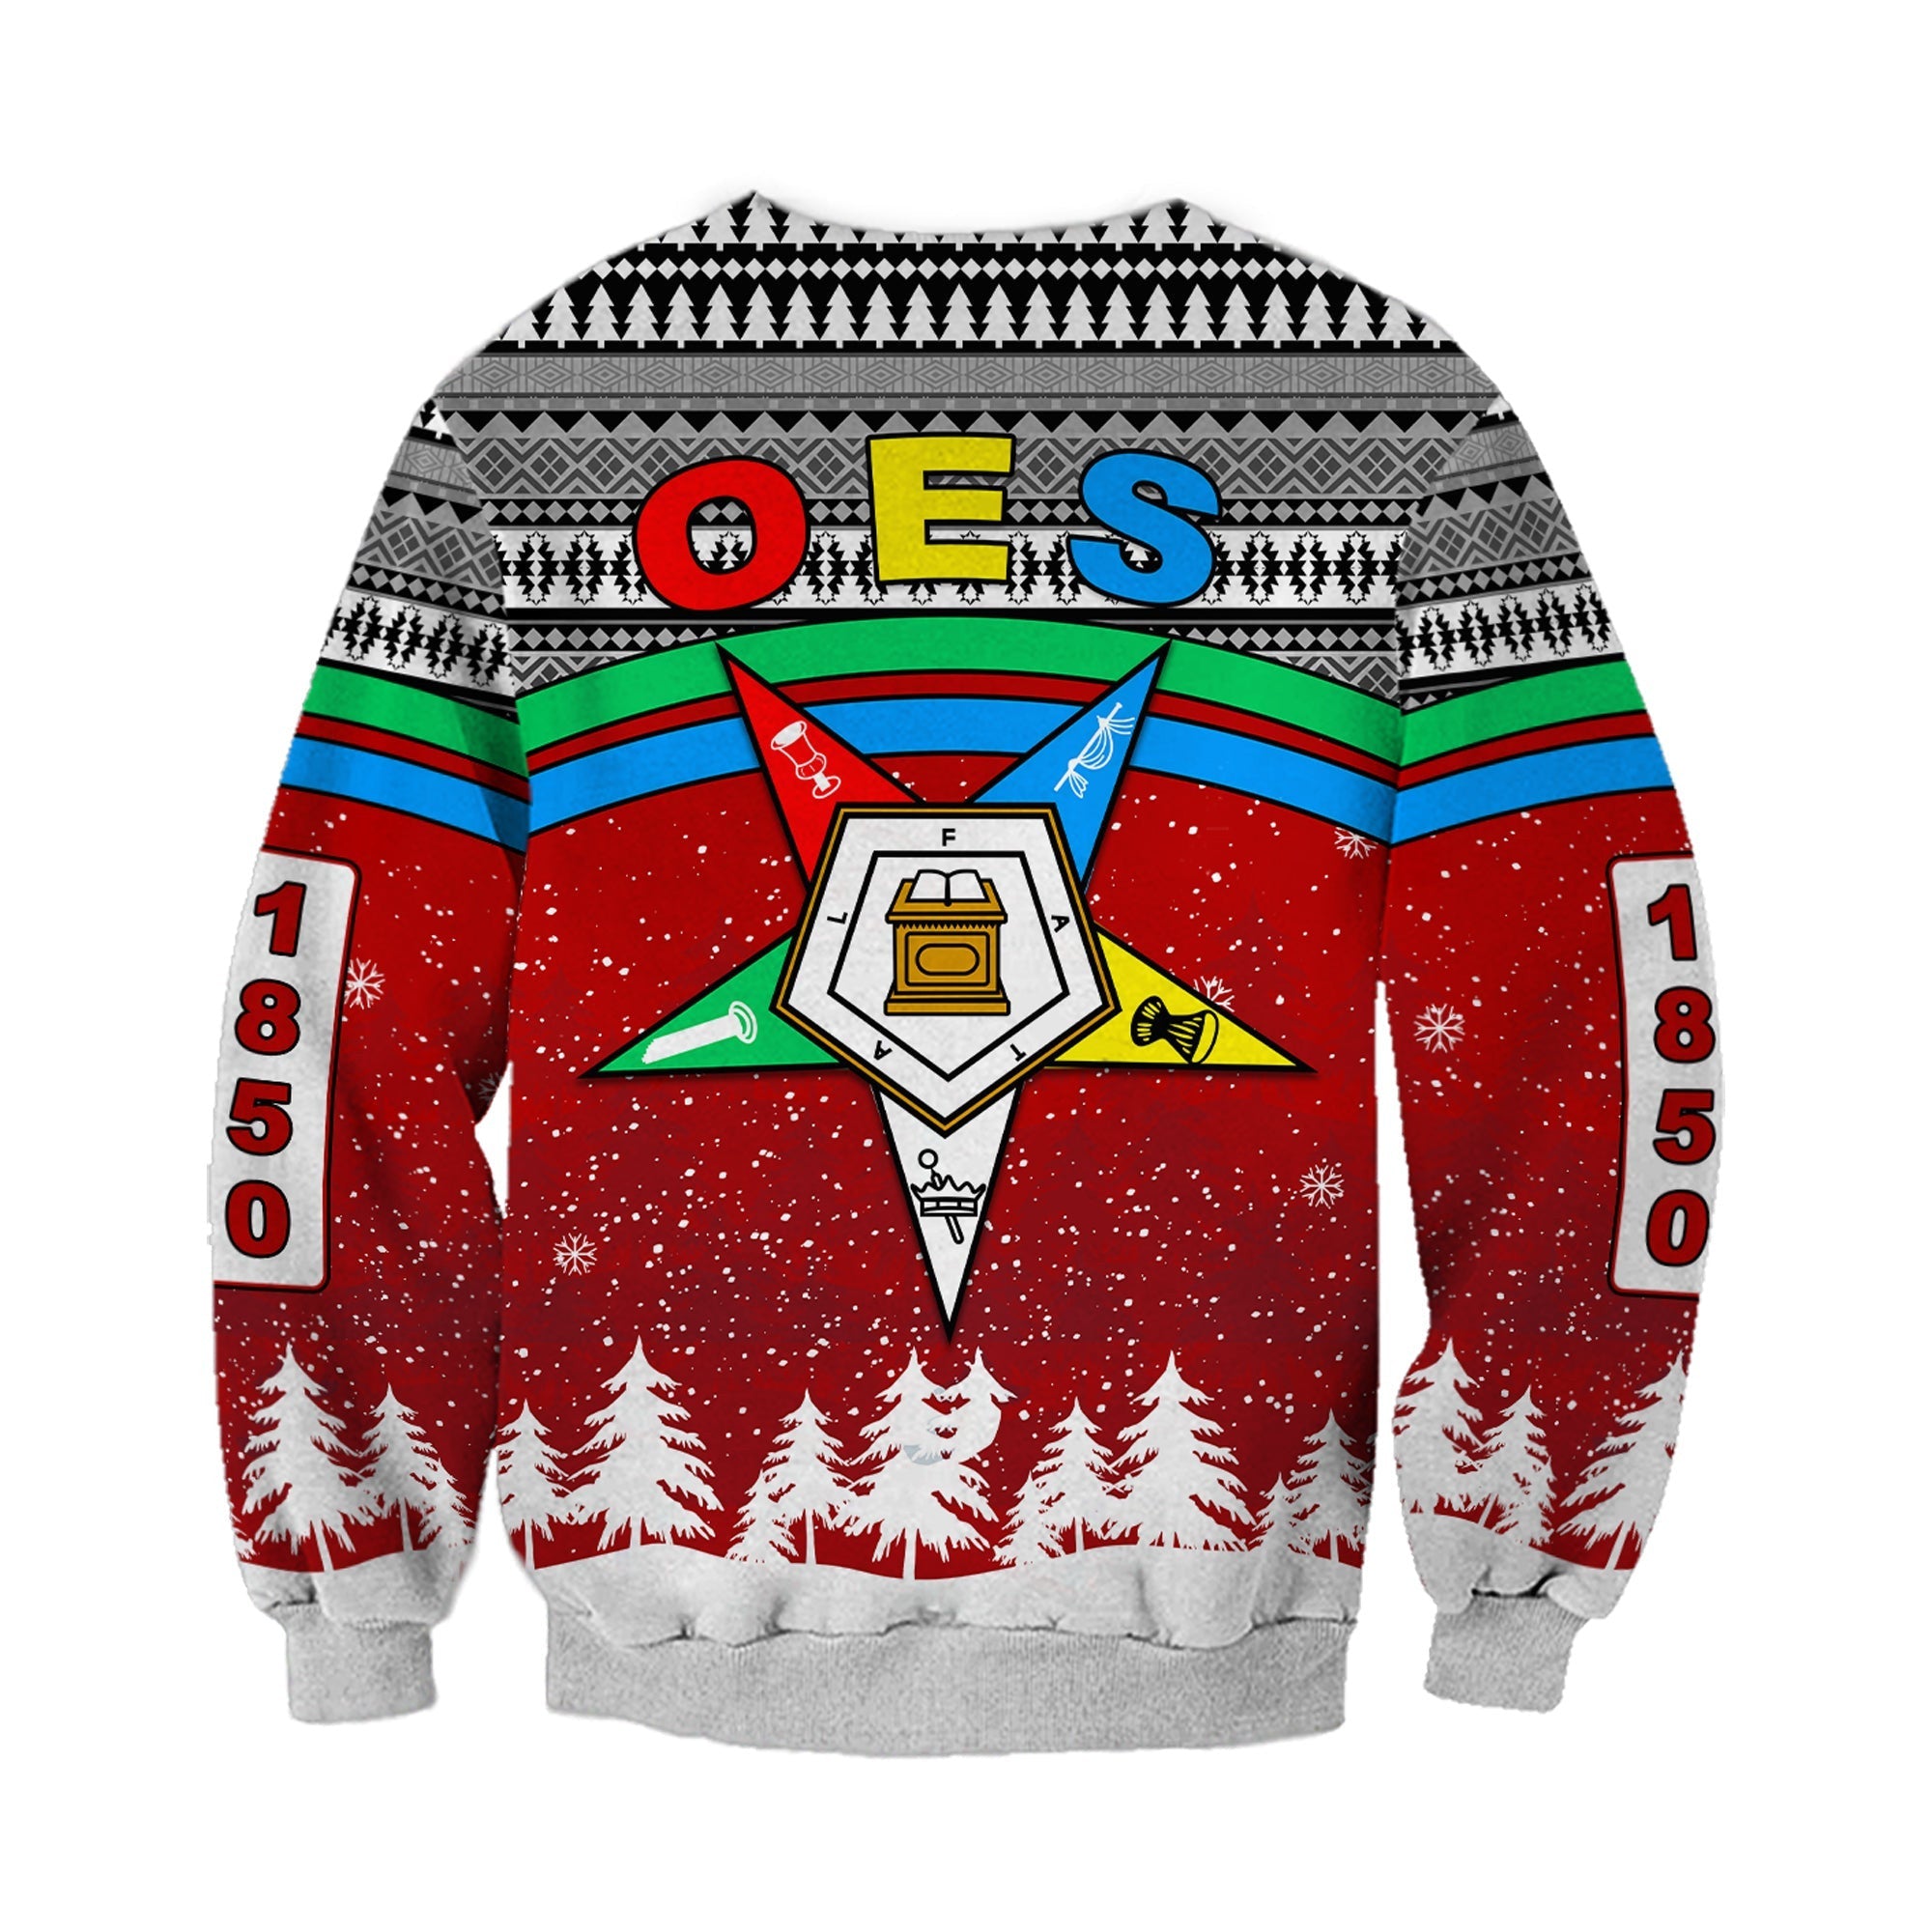 Sorority Sweatshirt - Order Of The Eastern Star Sweatshirt OES Christmas Pattern